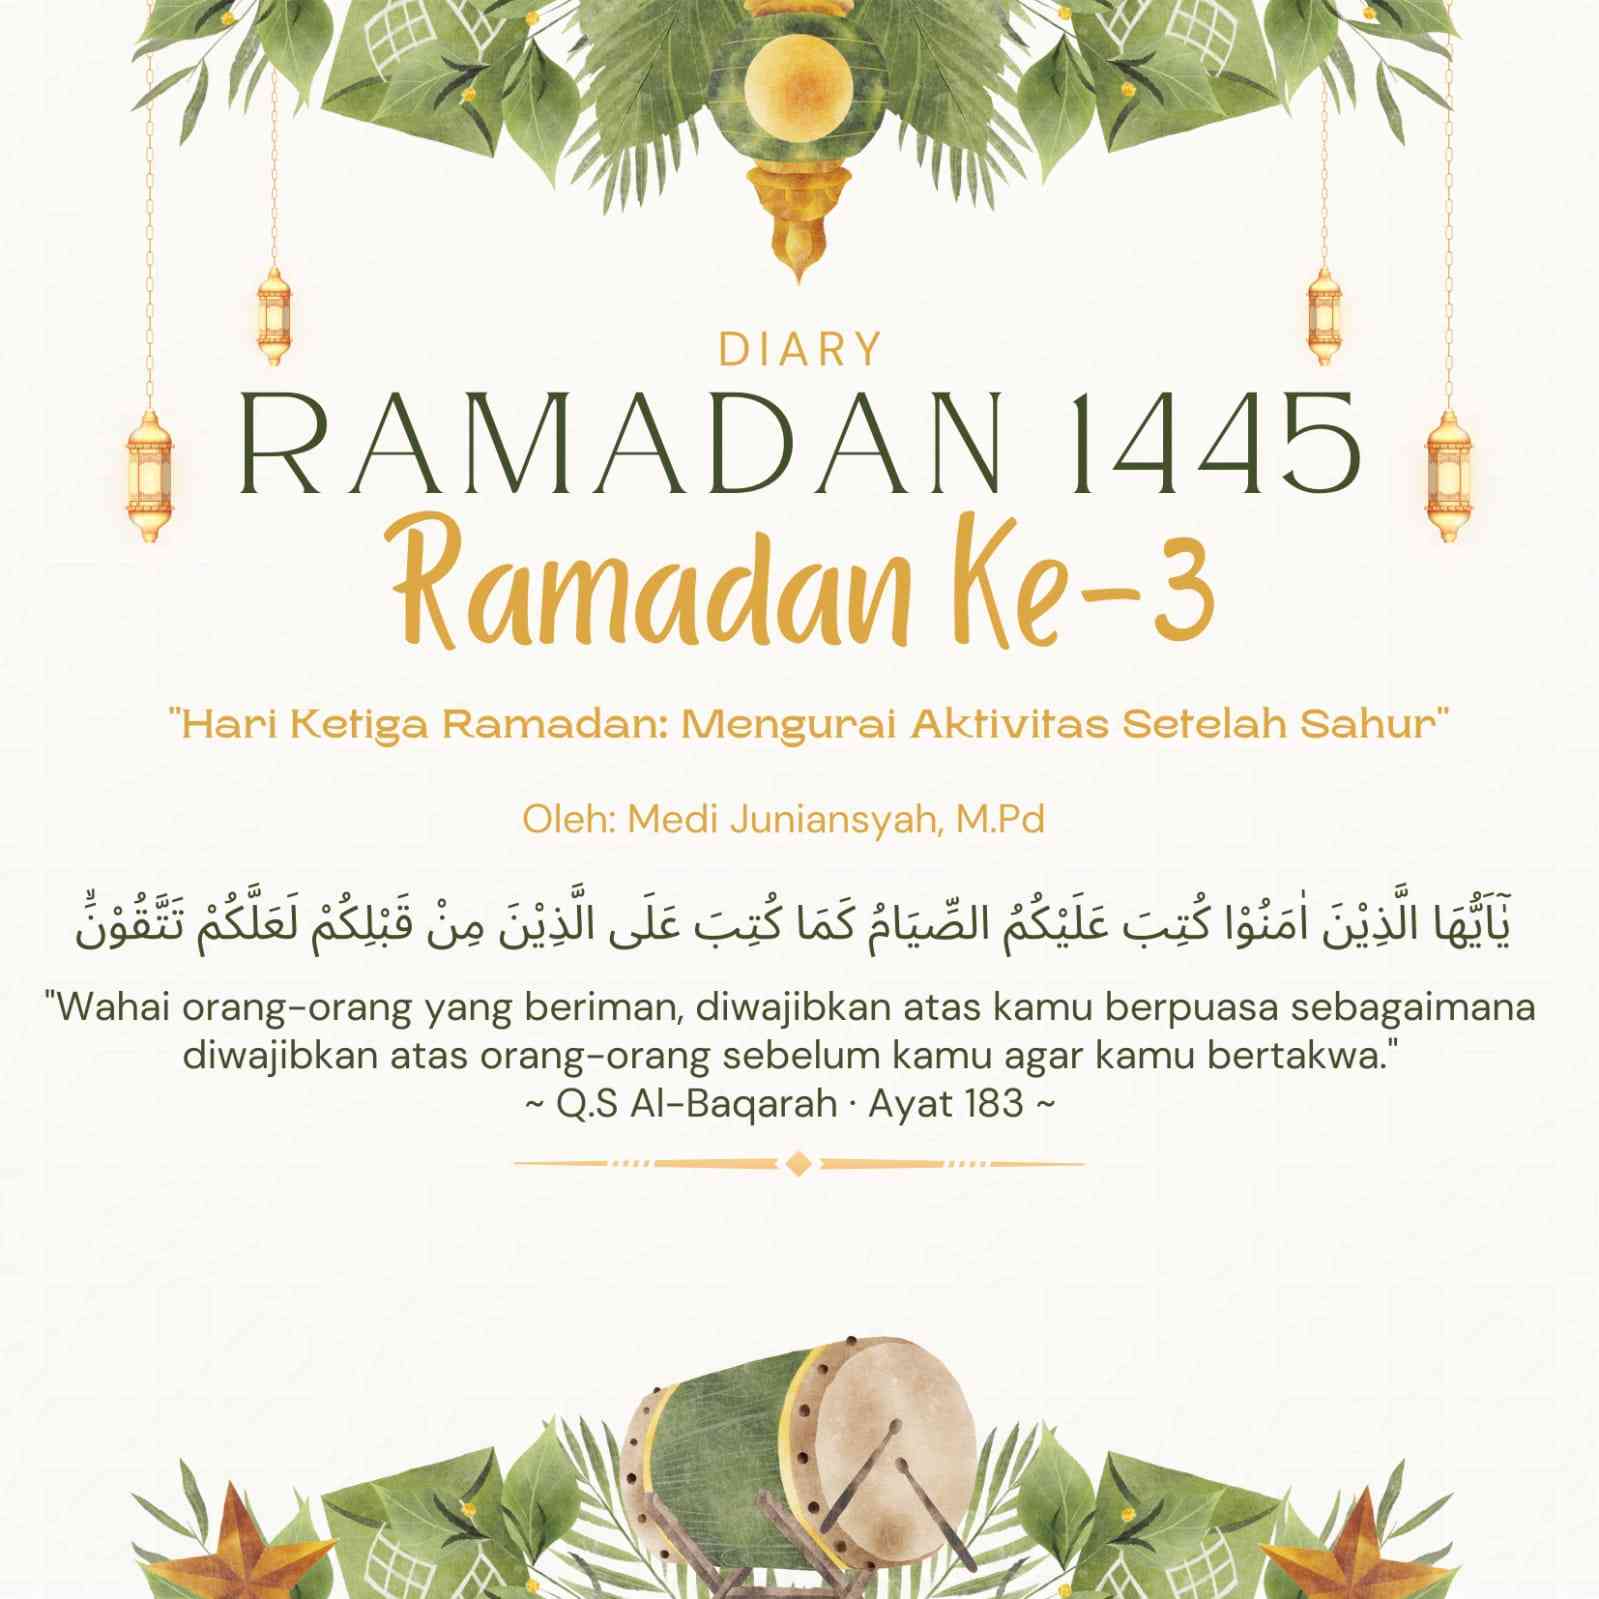 Hari Ketiga Ramadan: Mengurai Aktivitas Setelah Sahur - sumber gambar: canva.com (personal editing)